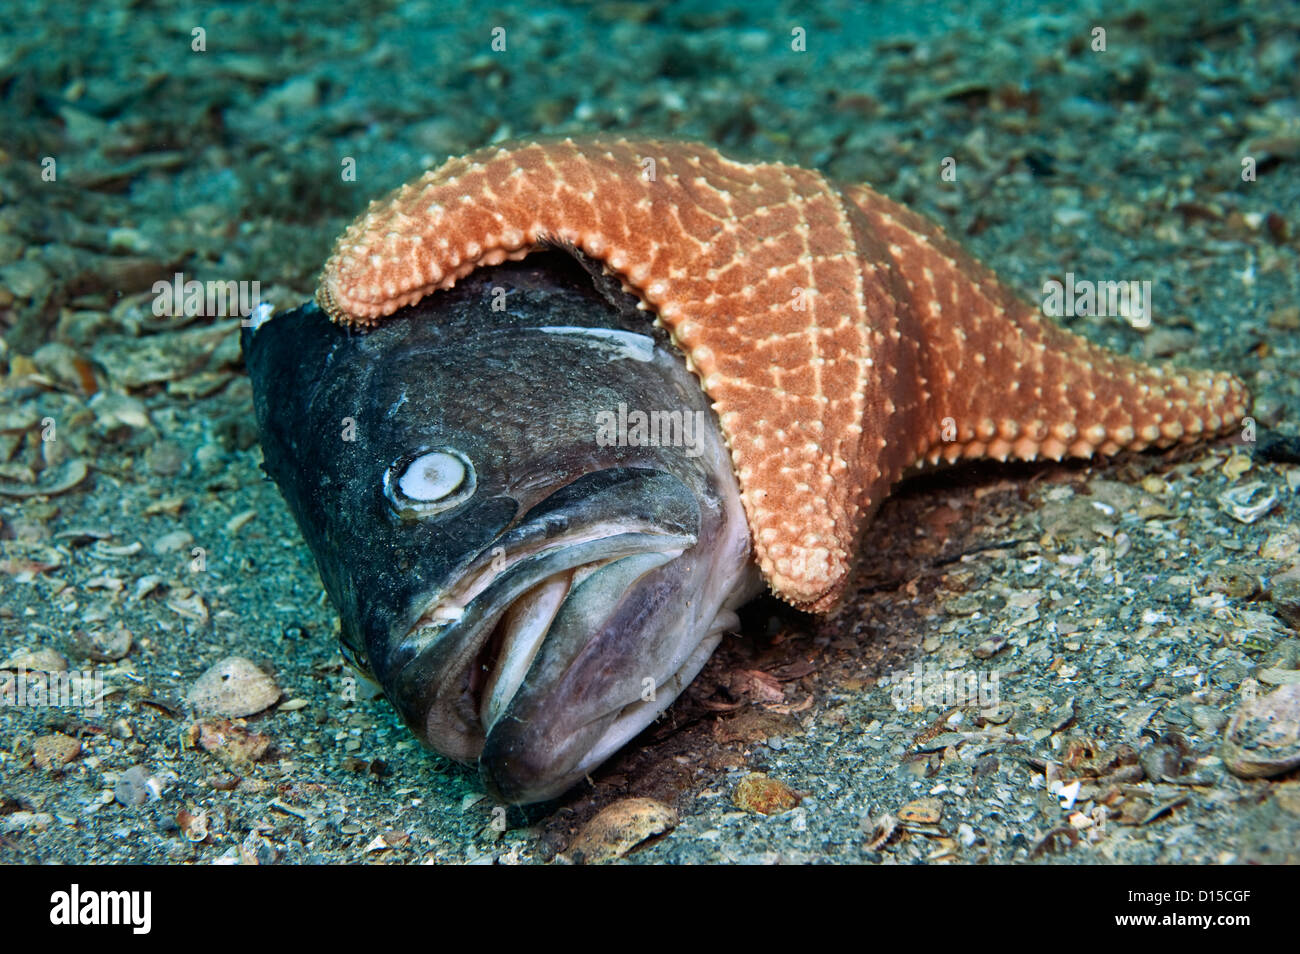 Un coussin étoile de mer ou Star, Oreaster reticulatus, récupère sur un poisson mort sur le fond du lac, en Floride, le Lagon d'une valeur Banque D'Images